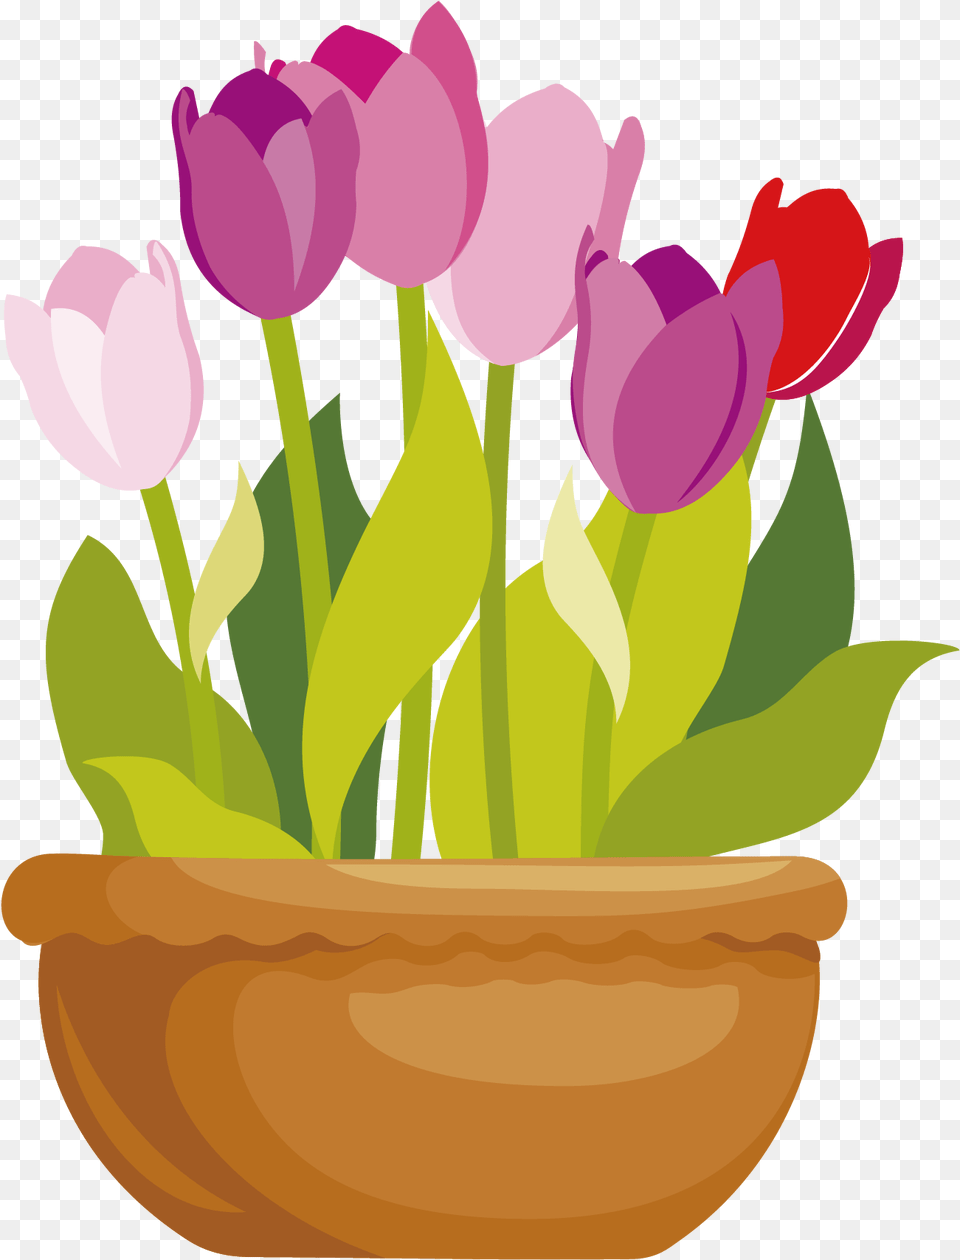 Flowerpots Clipart Pink Flower Pot Clipart, Potted Plant, Plant, Petal, Flower Arrangement Free Png Download